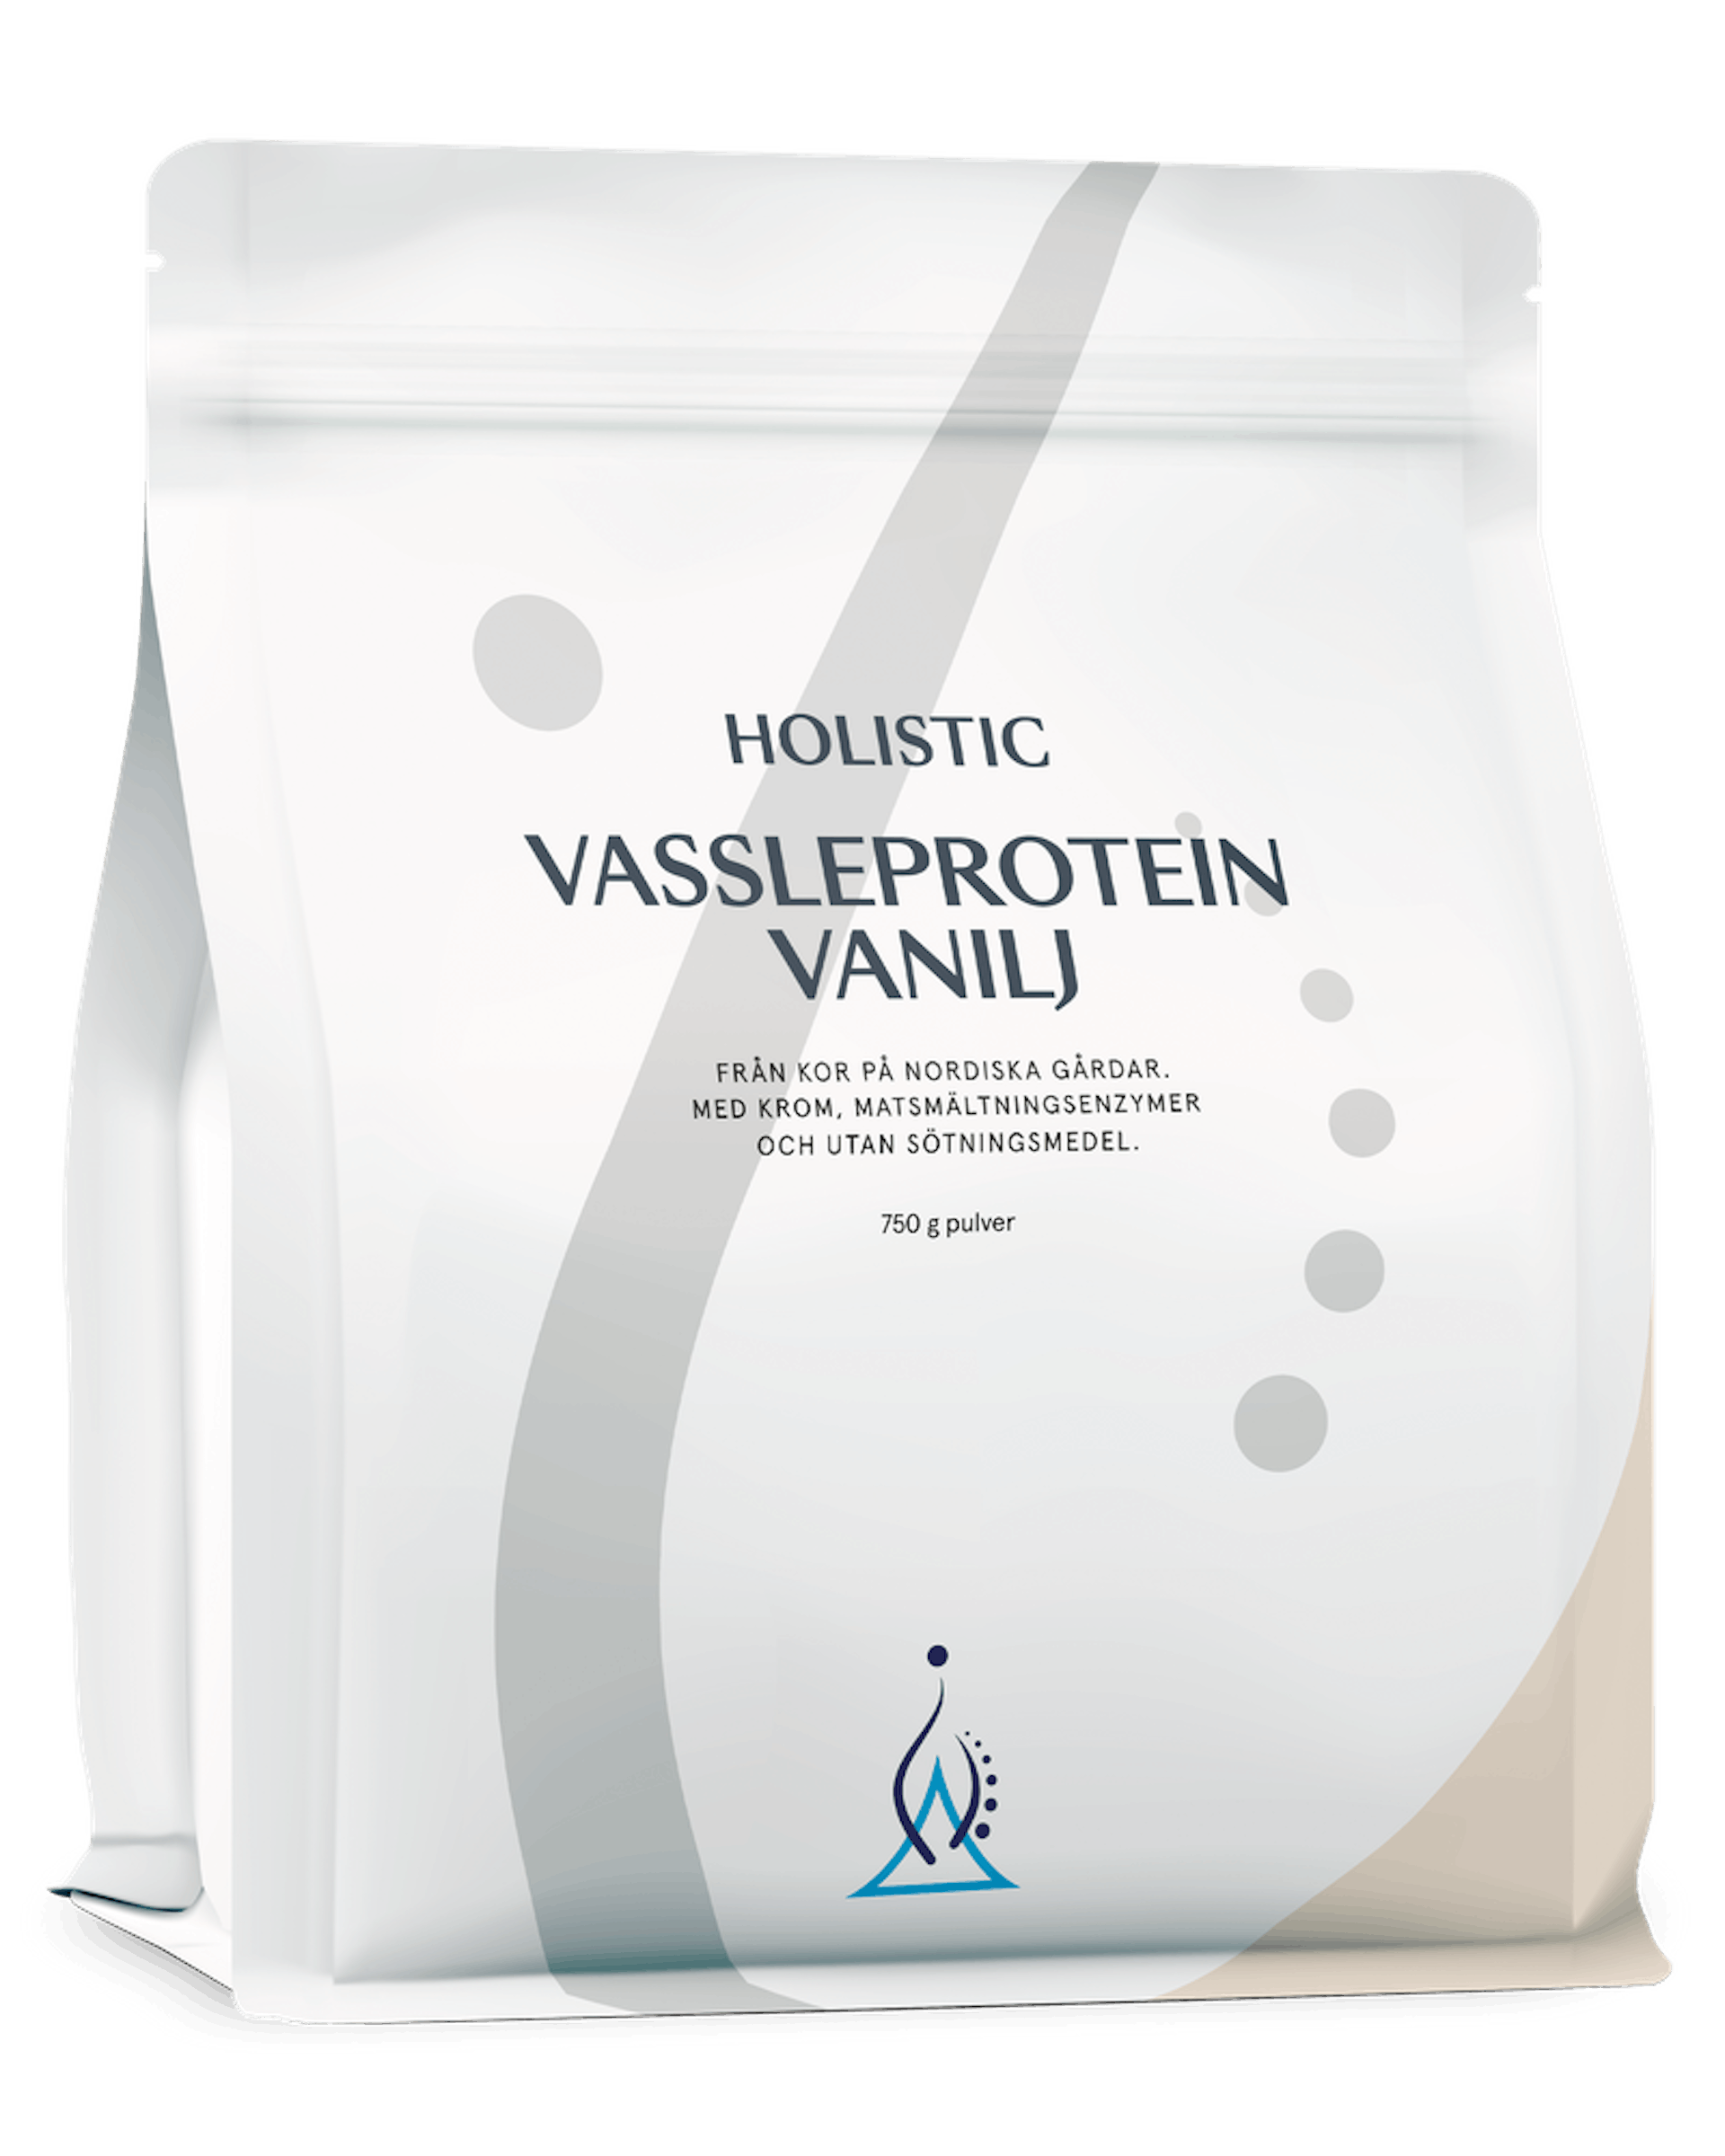 Vassleprotein vanilj, 750 g (1 av 1)